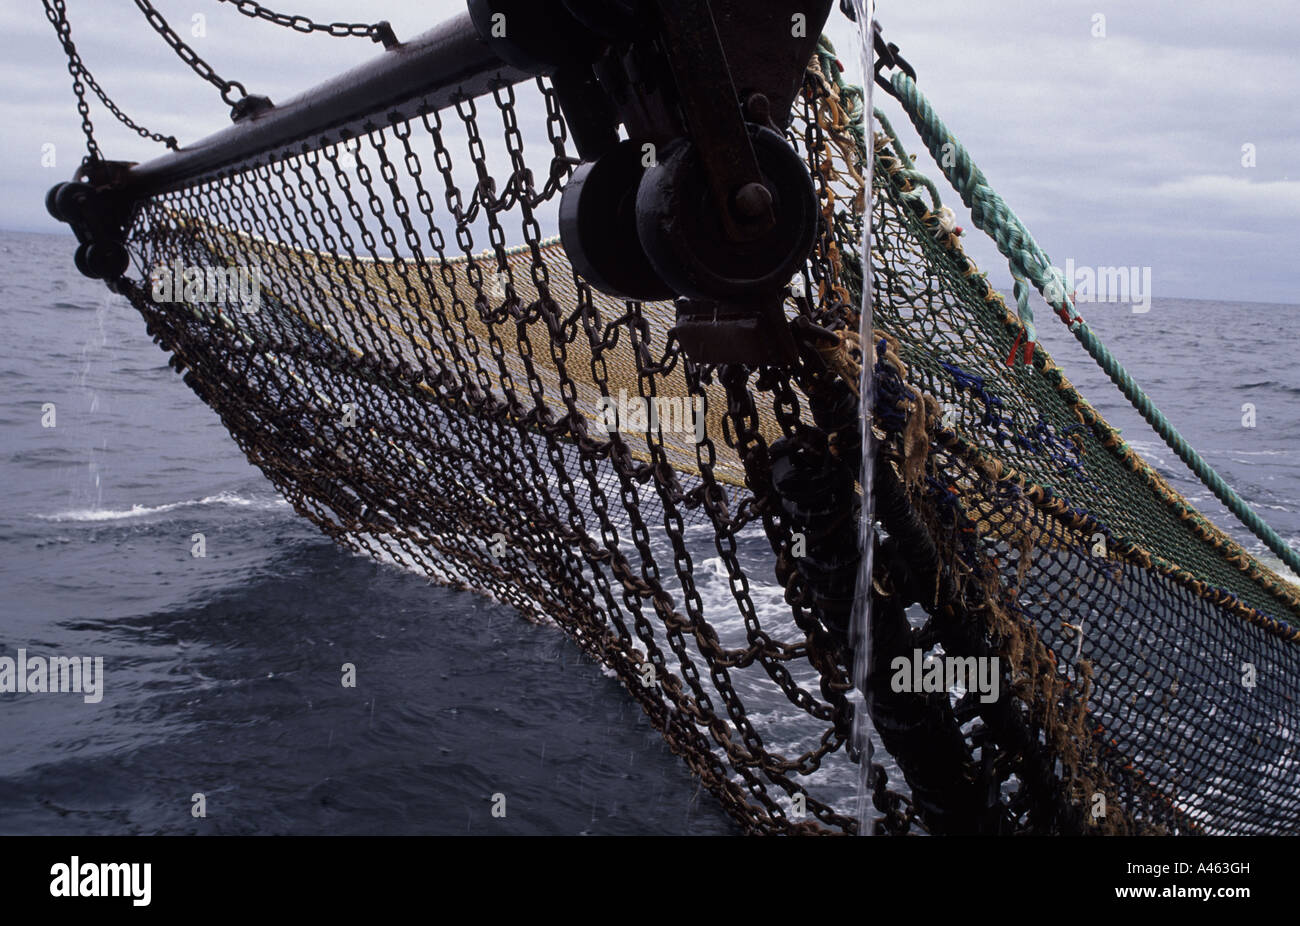 Beam trawl fishing net Stock Photo - Alamy